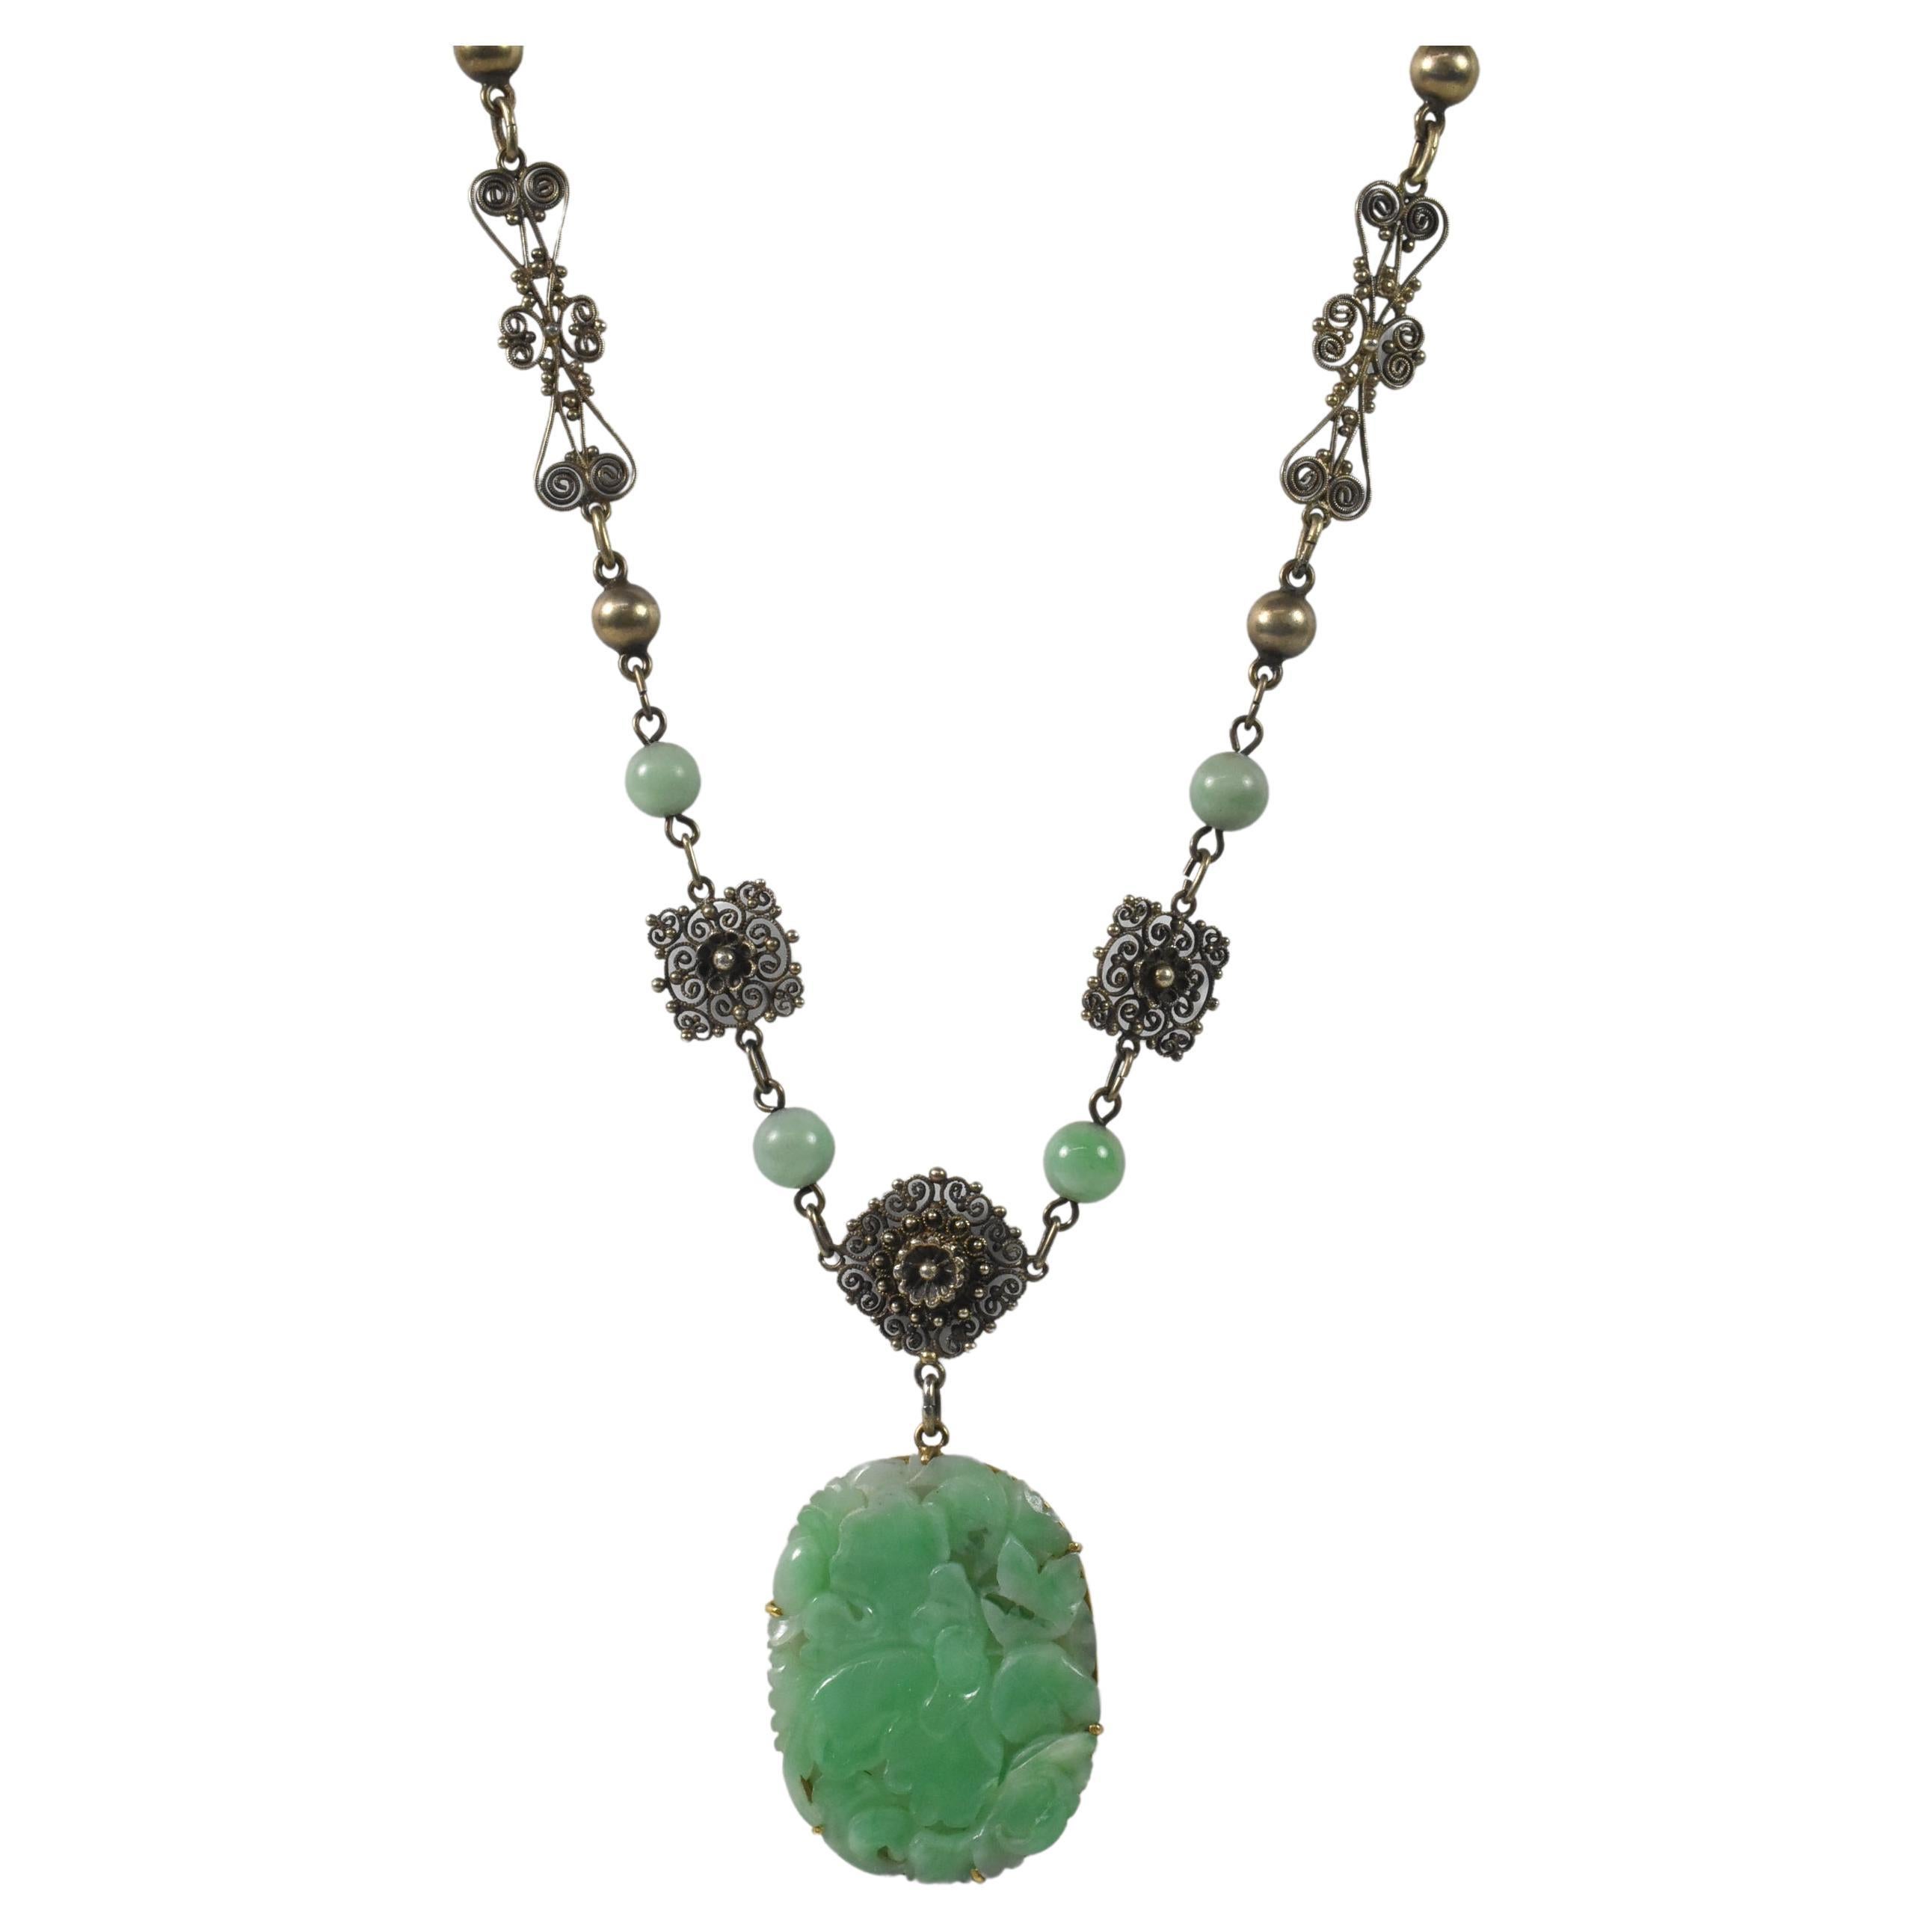 Pendentif asiatique sculpté en jade sur une chaîne en argent